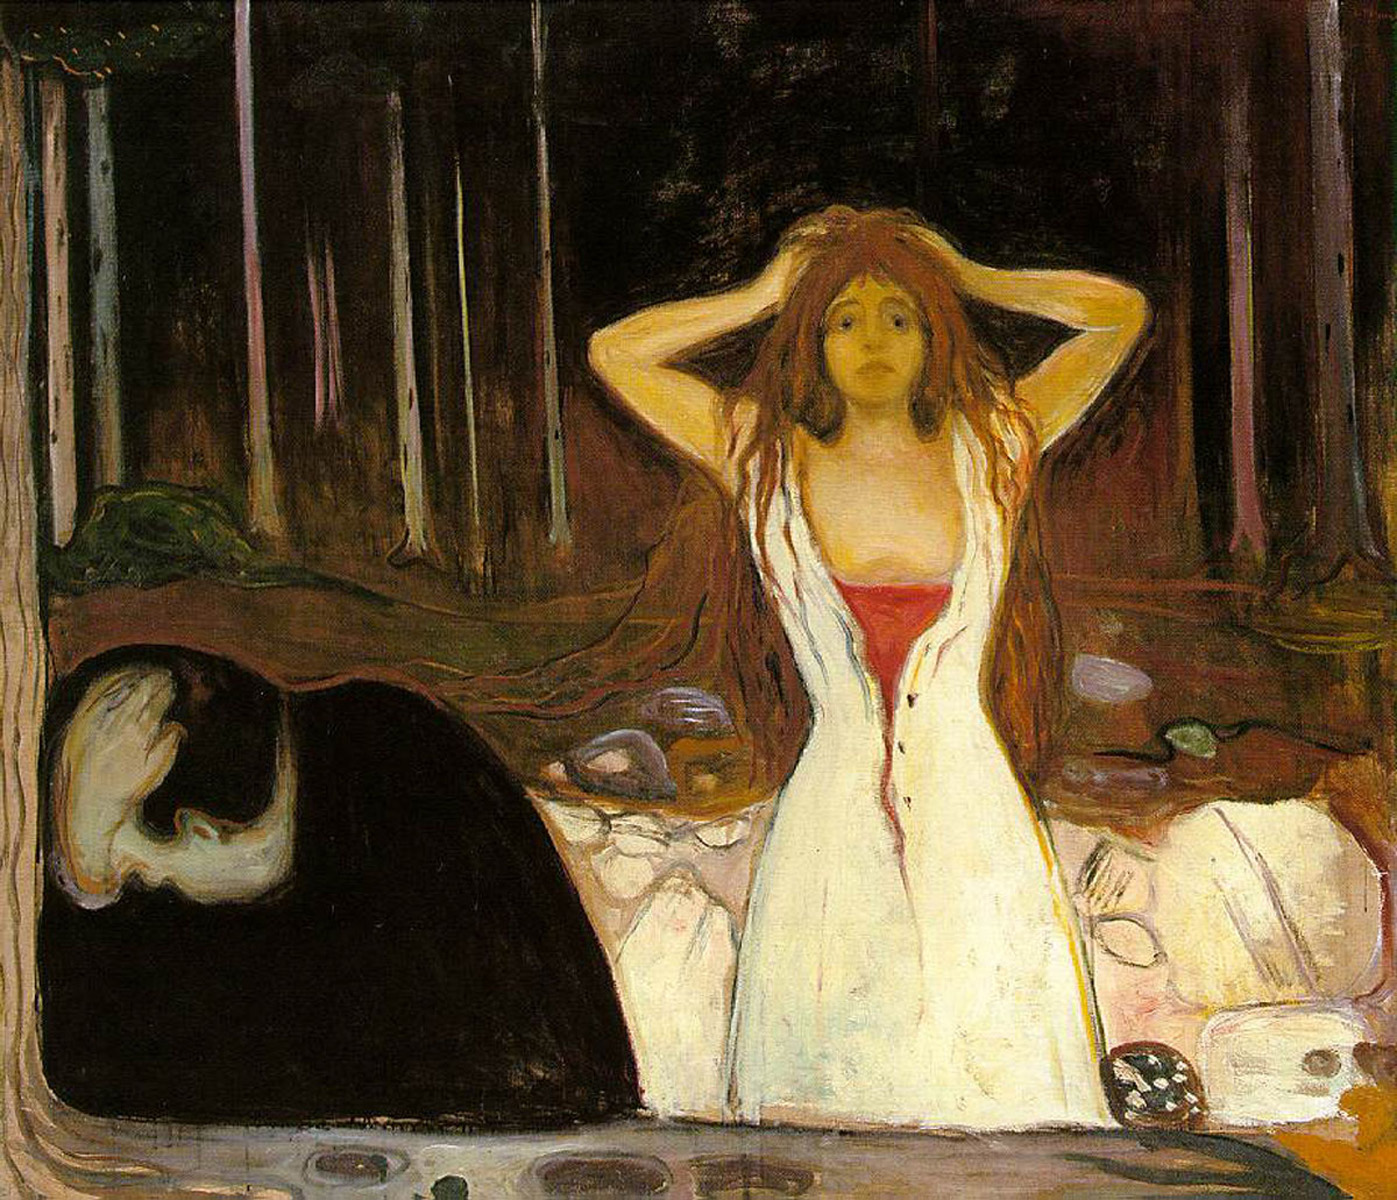 Cinzas by Edvard Munch - 1895 